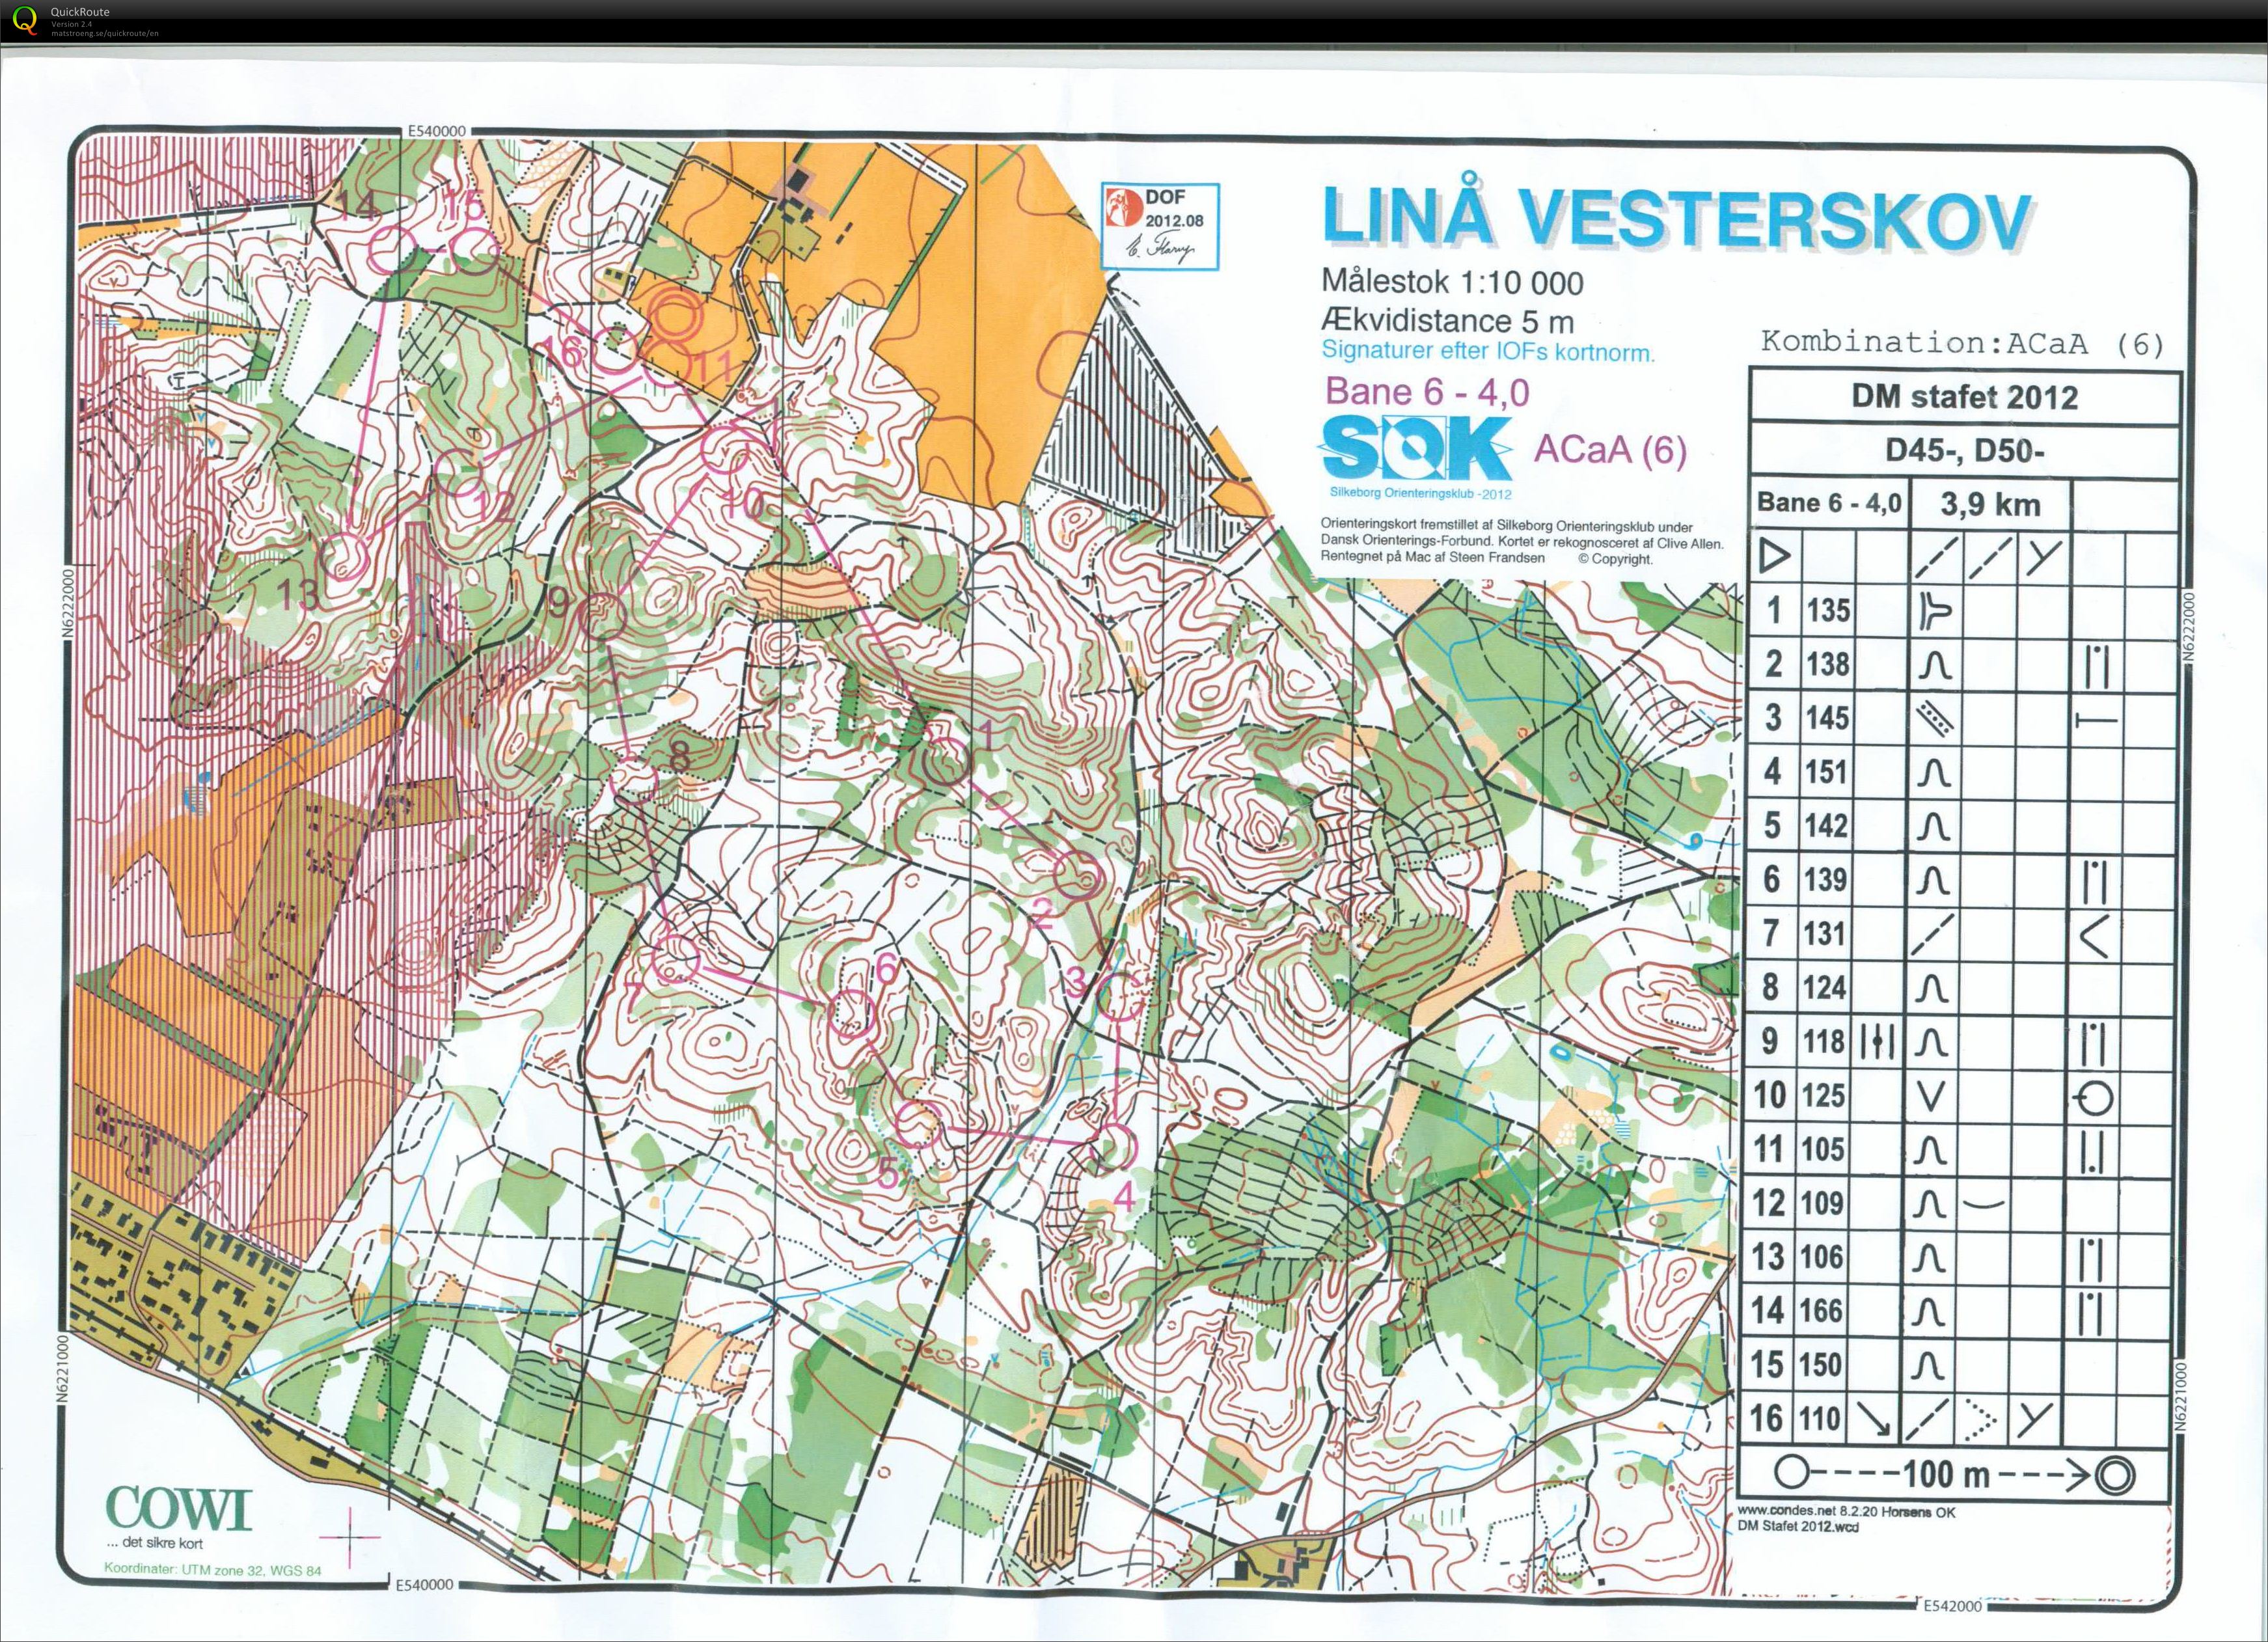 Linå Vesterskov, DM-stafet, Pia Gade, Bane D50-2 (2012-09-15)